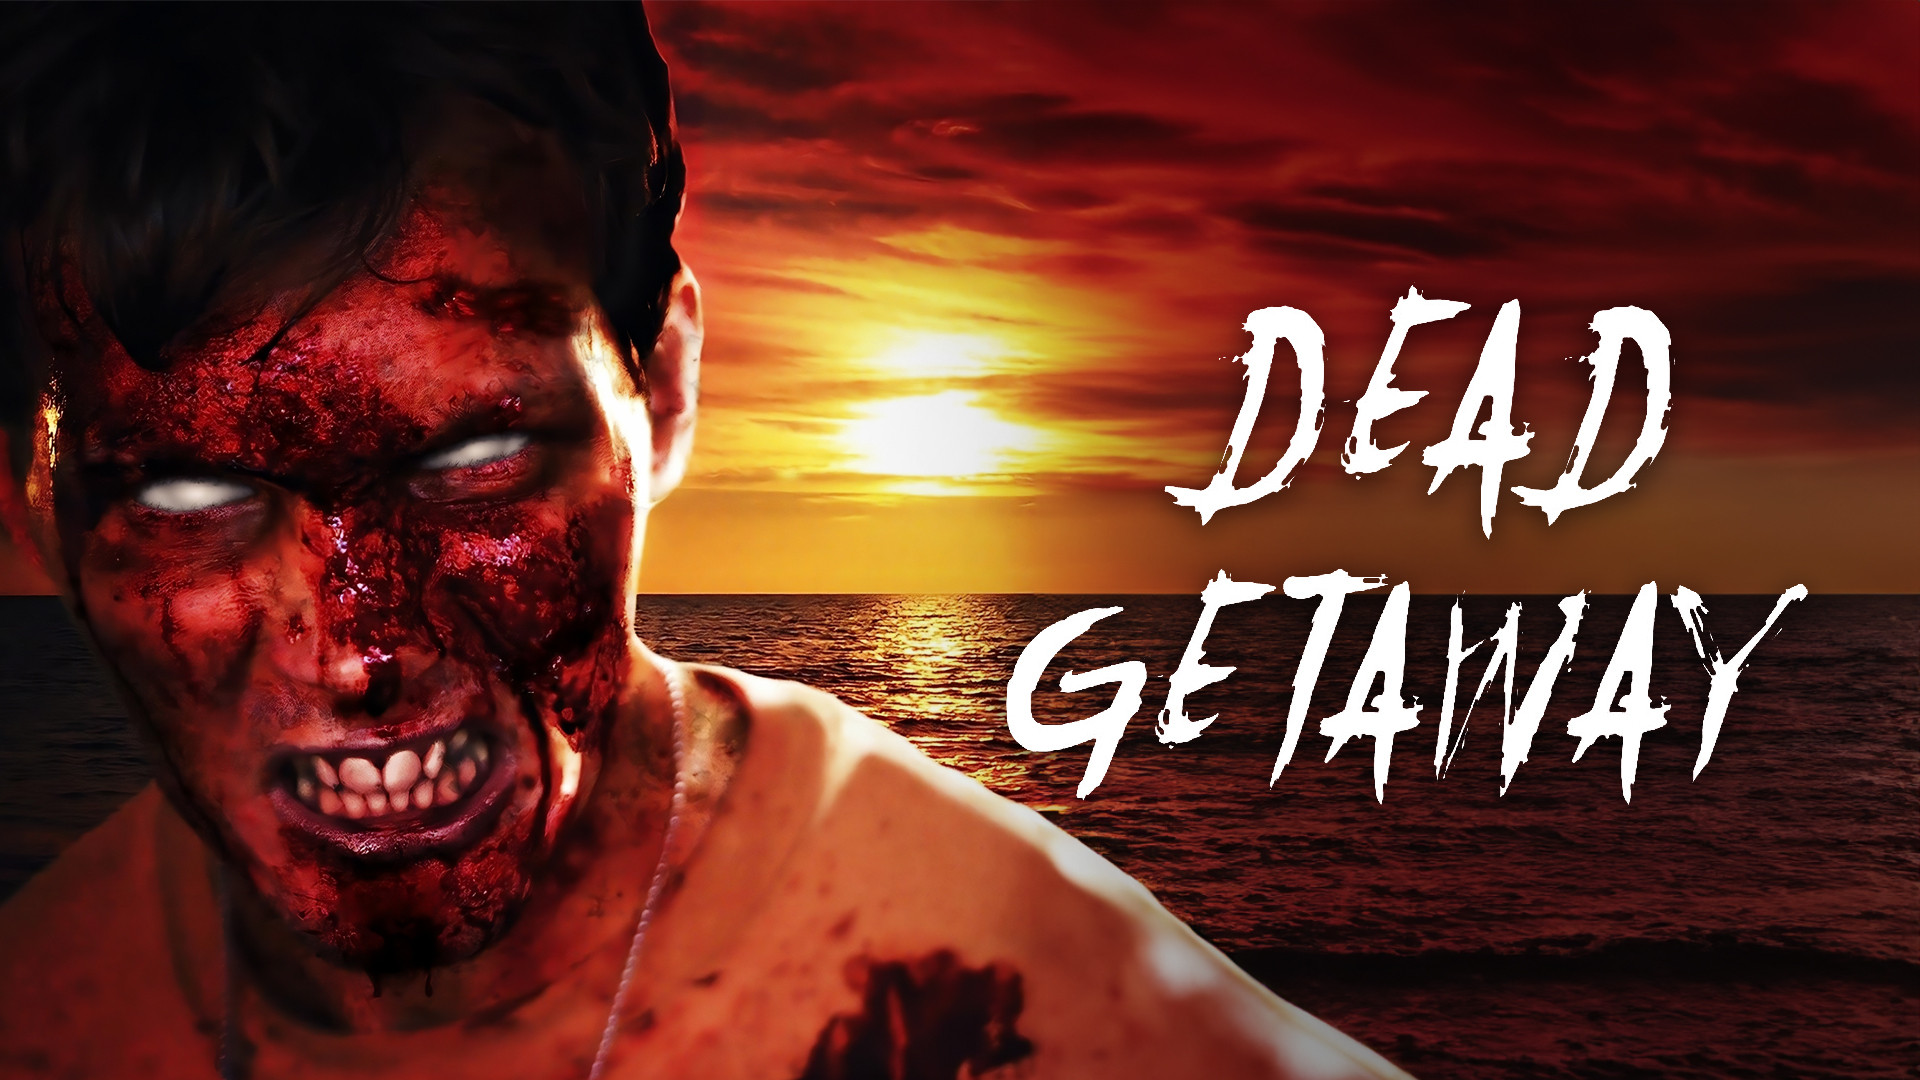 Dead Getaway